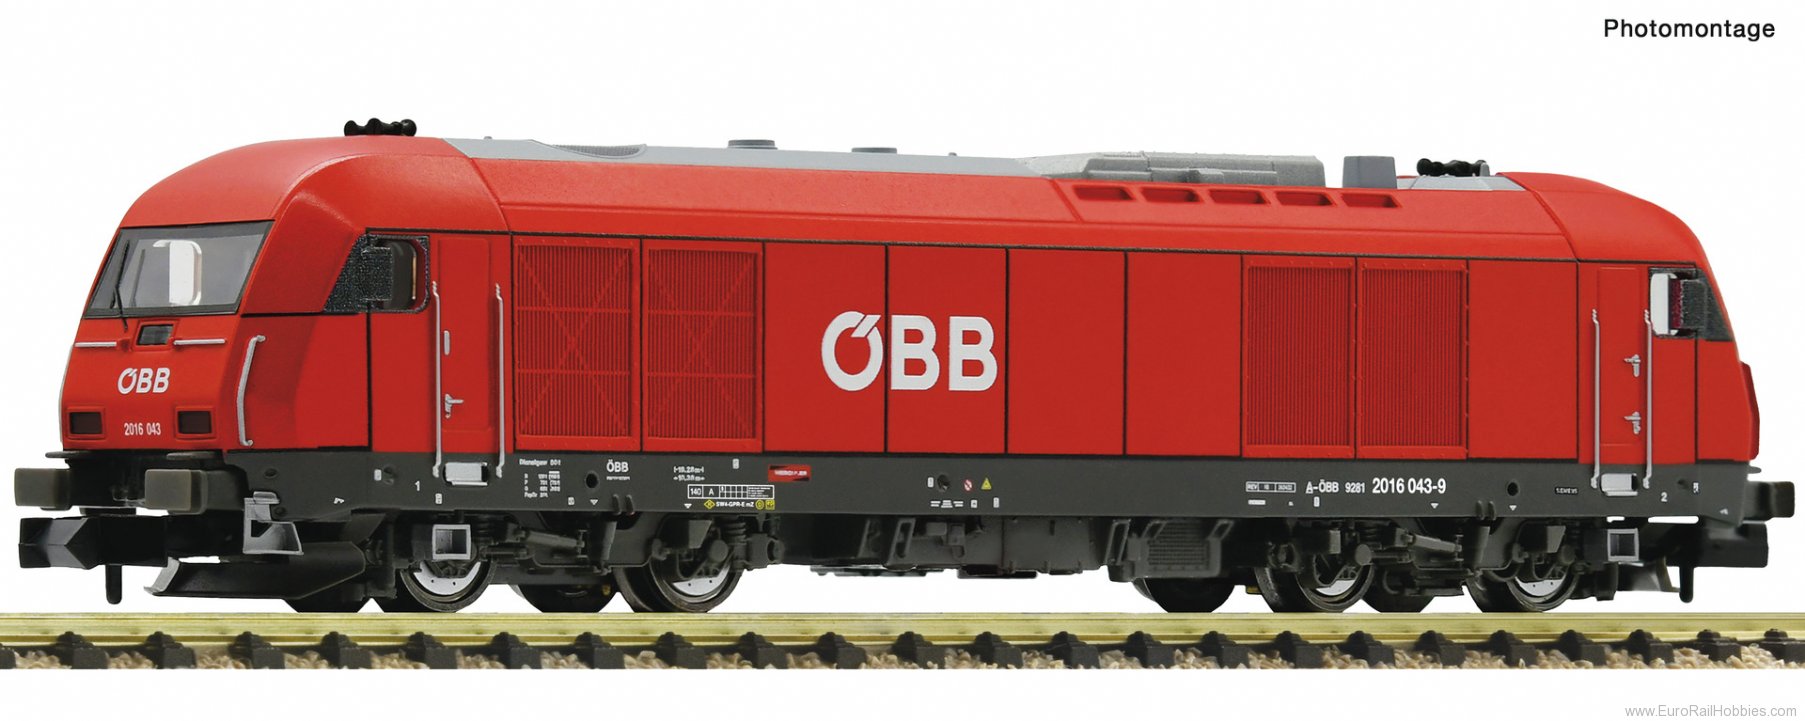 Fleischmann 7360012 Diesel locomotive 2016 043-9, ÃBB (DC Anal